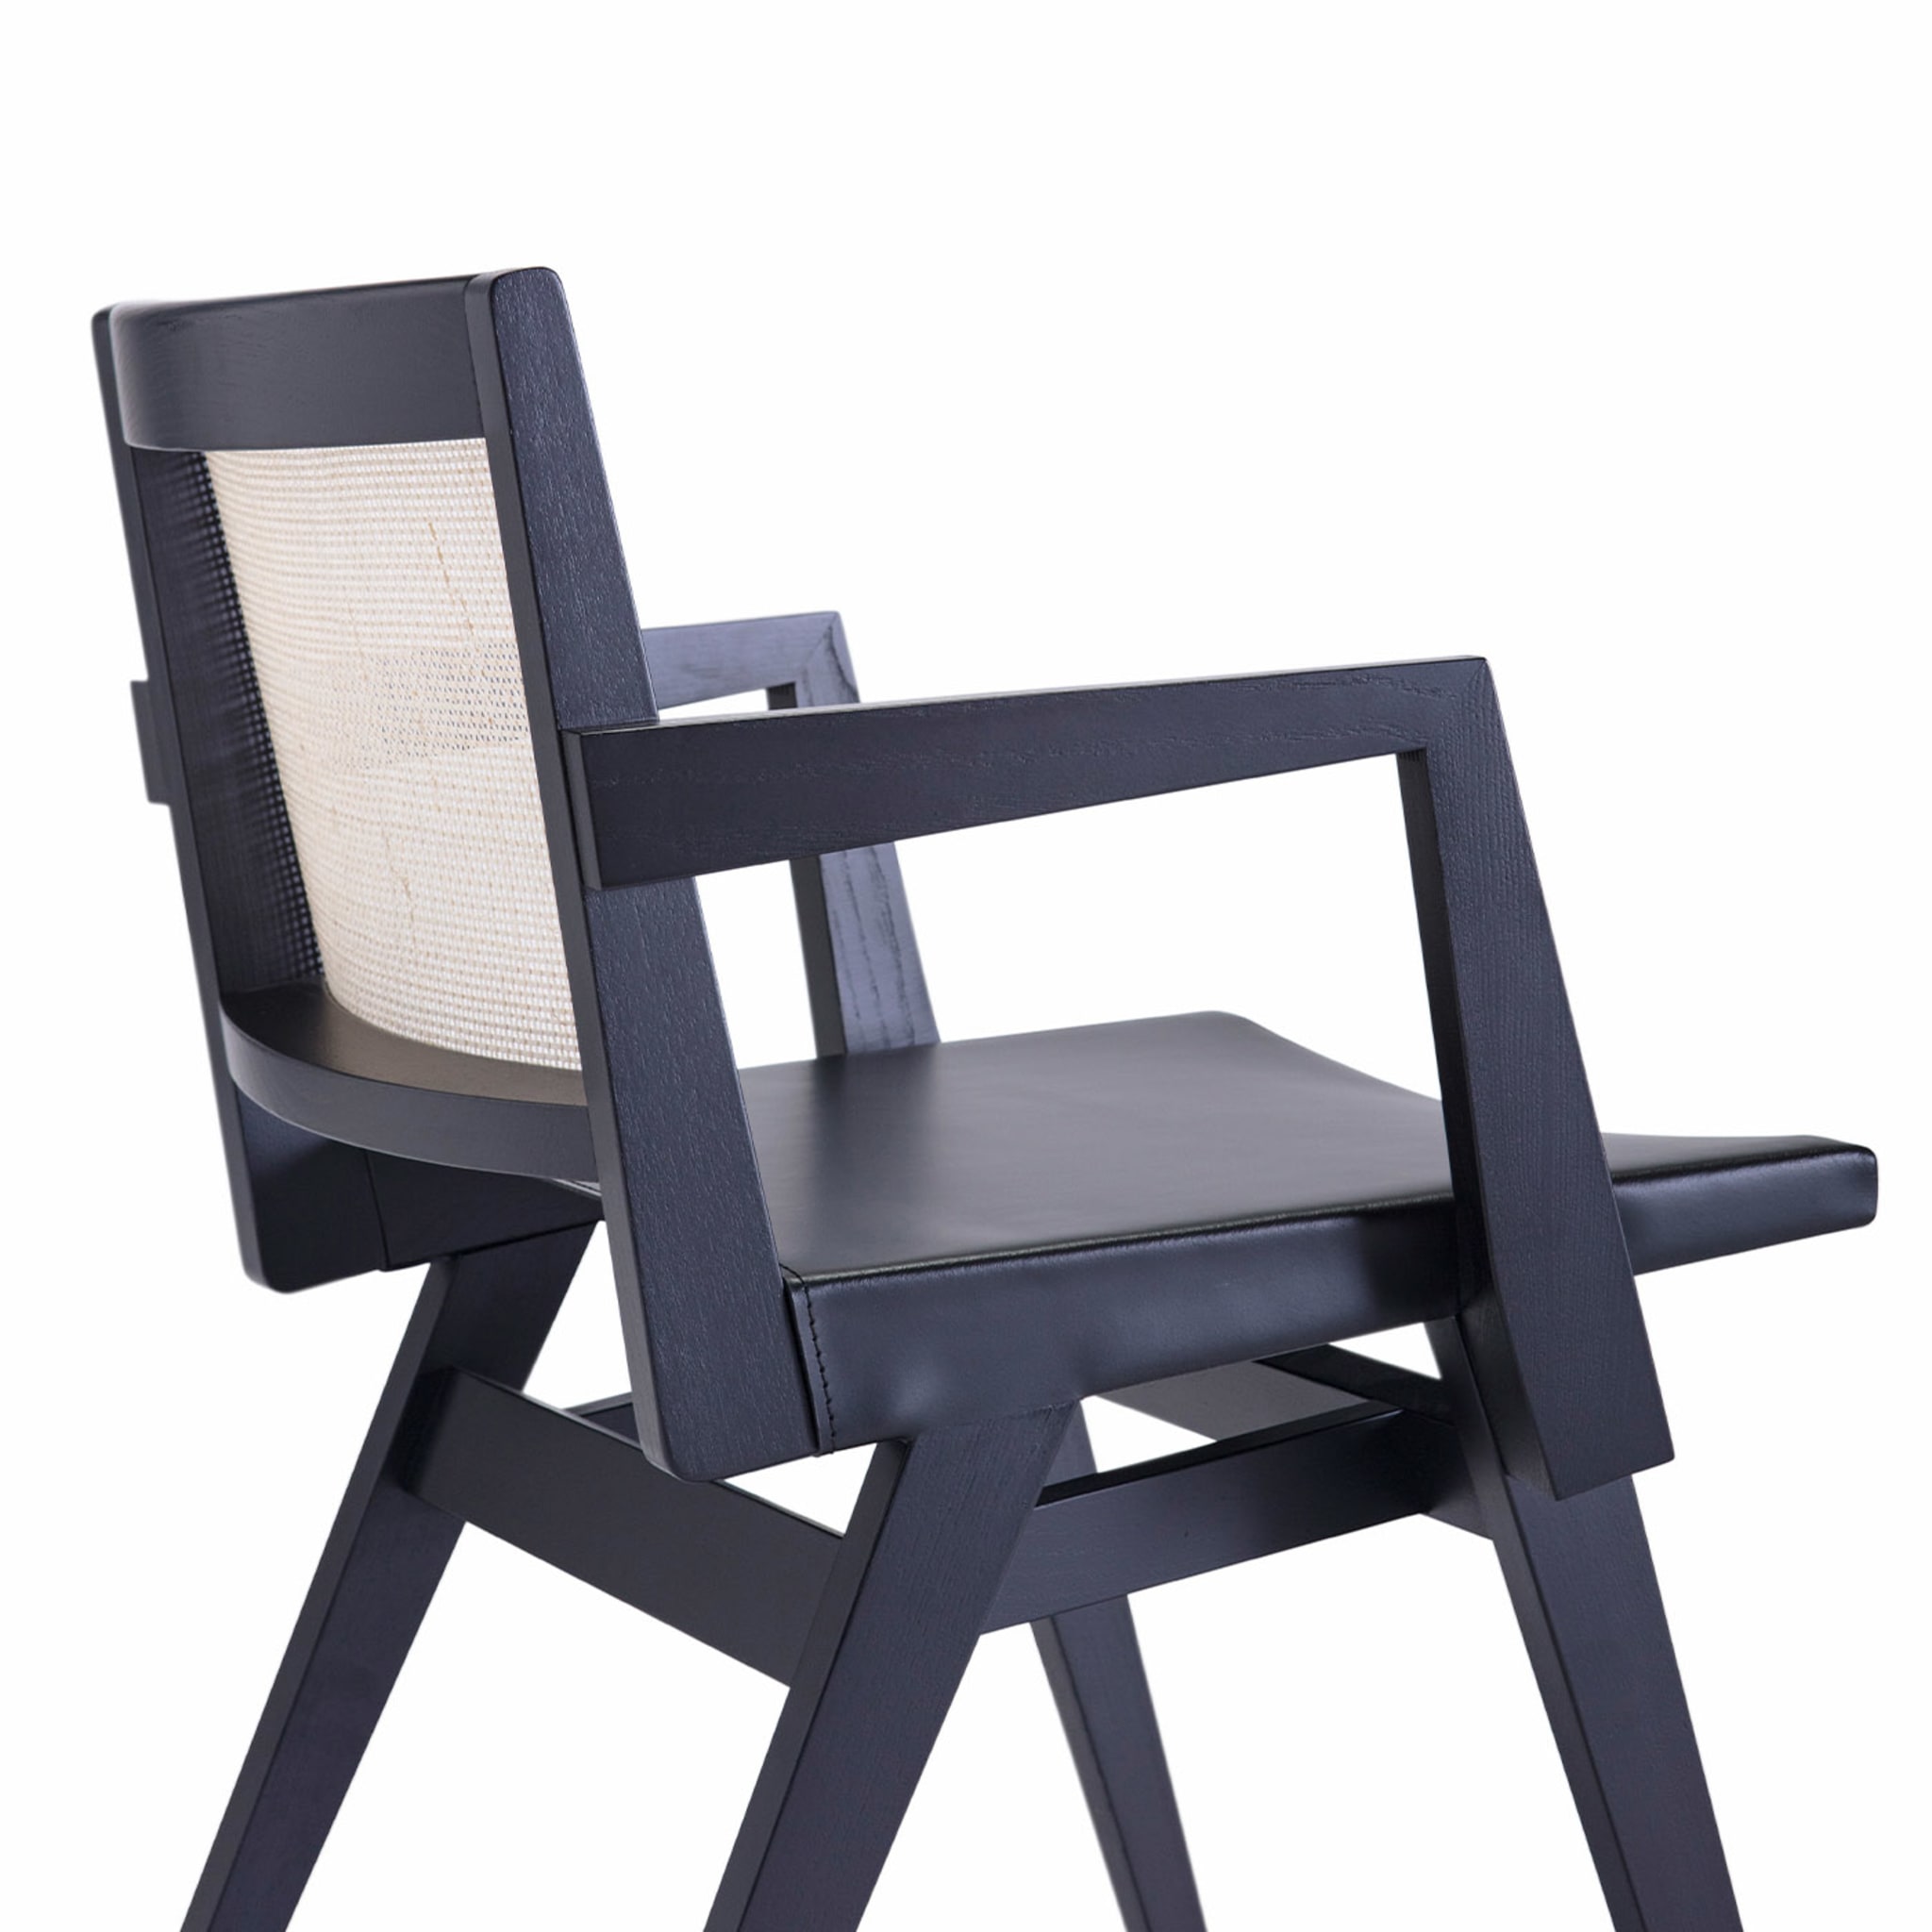 Dorothea/P Chaise noire - Vue alternative 3